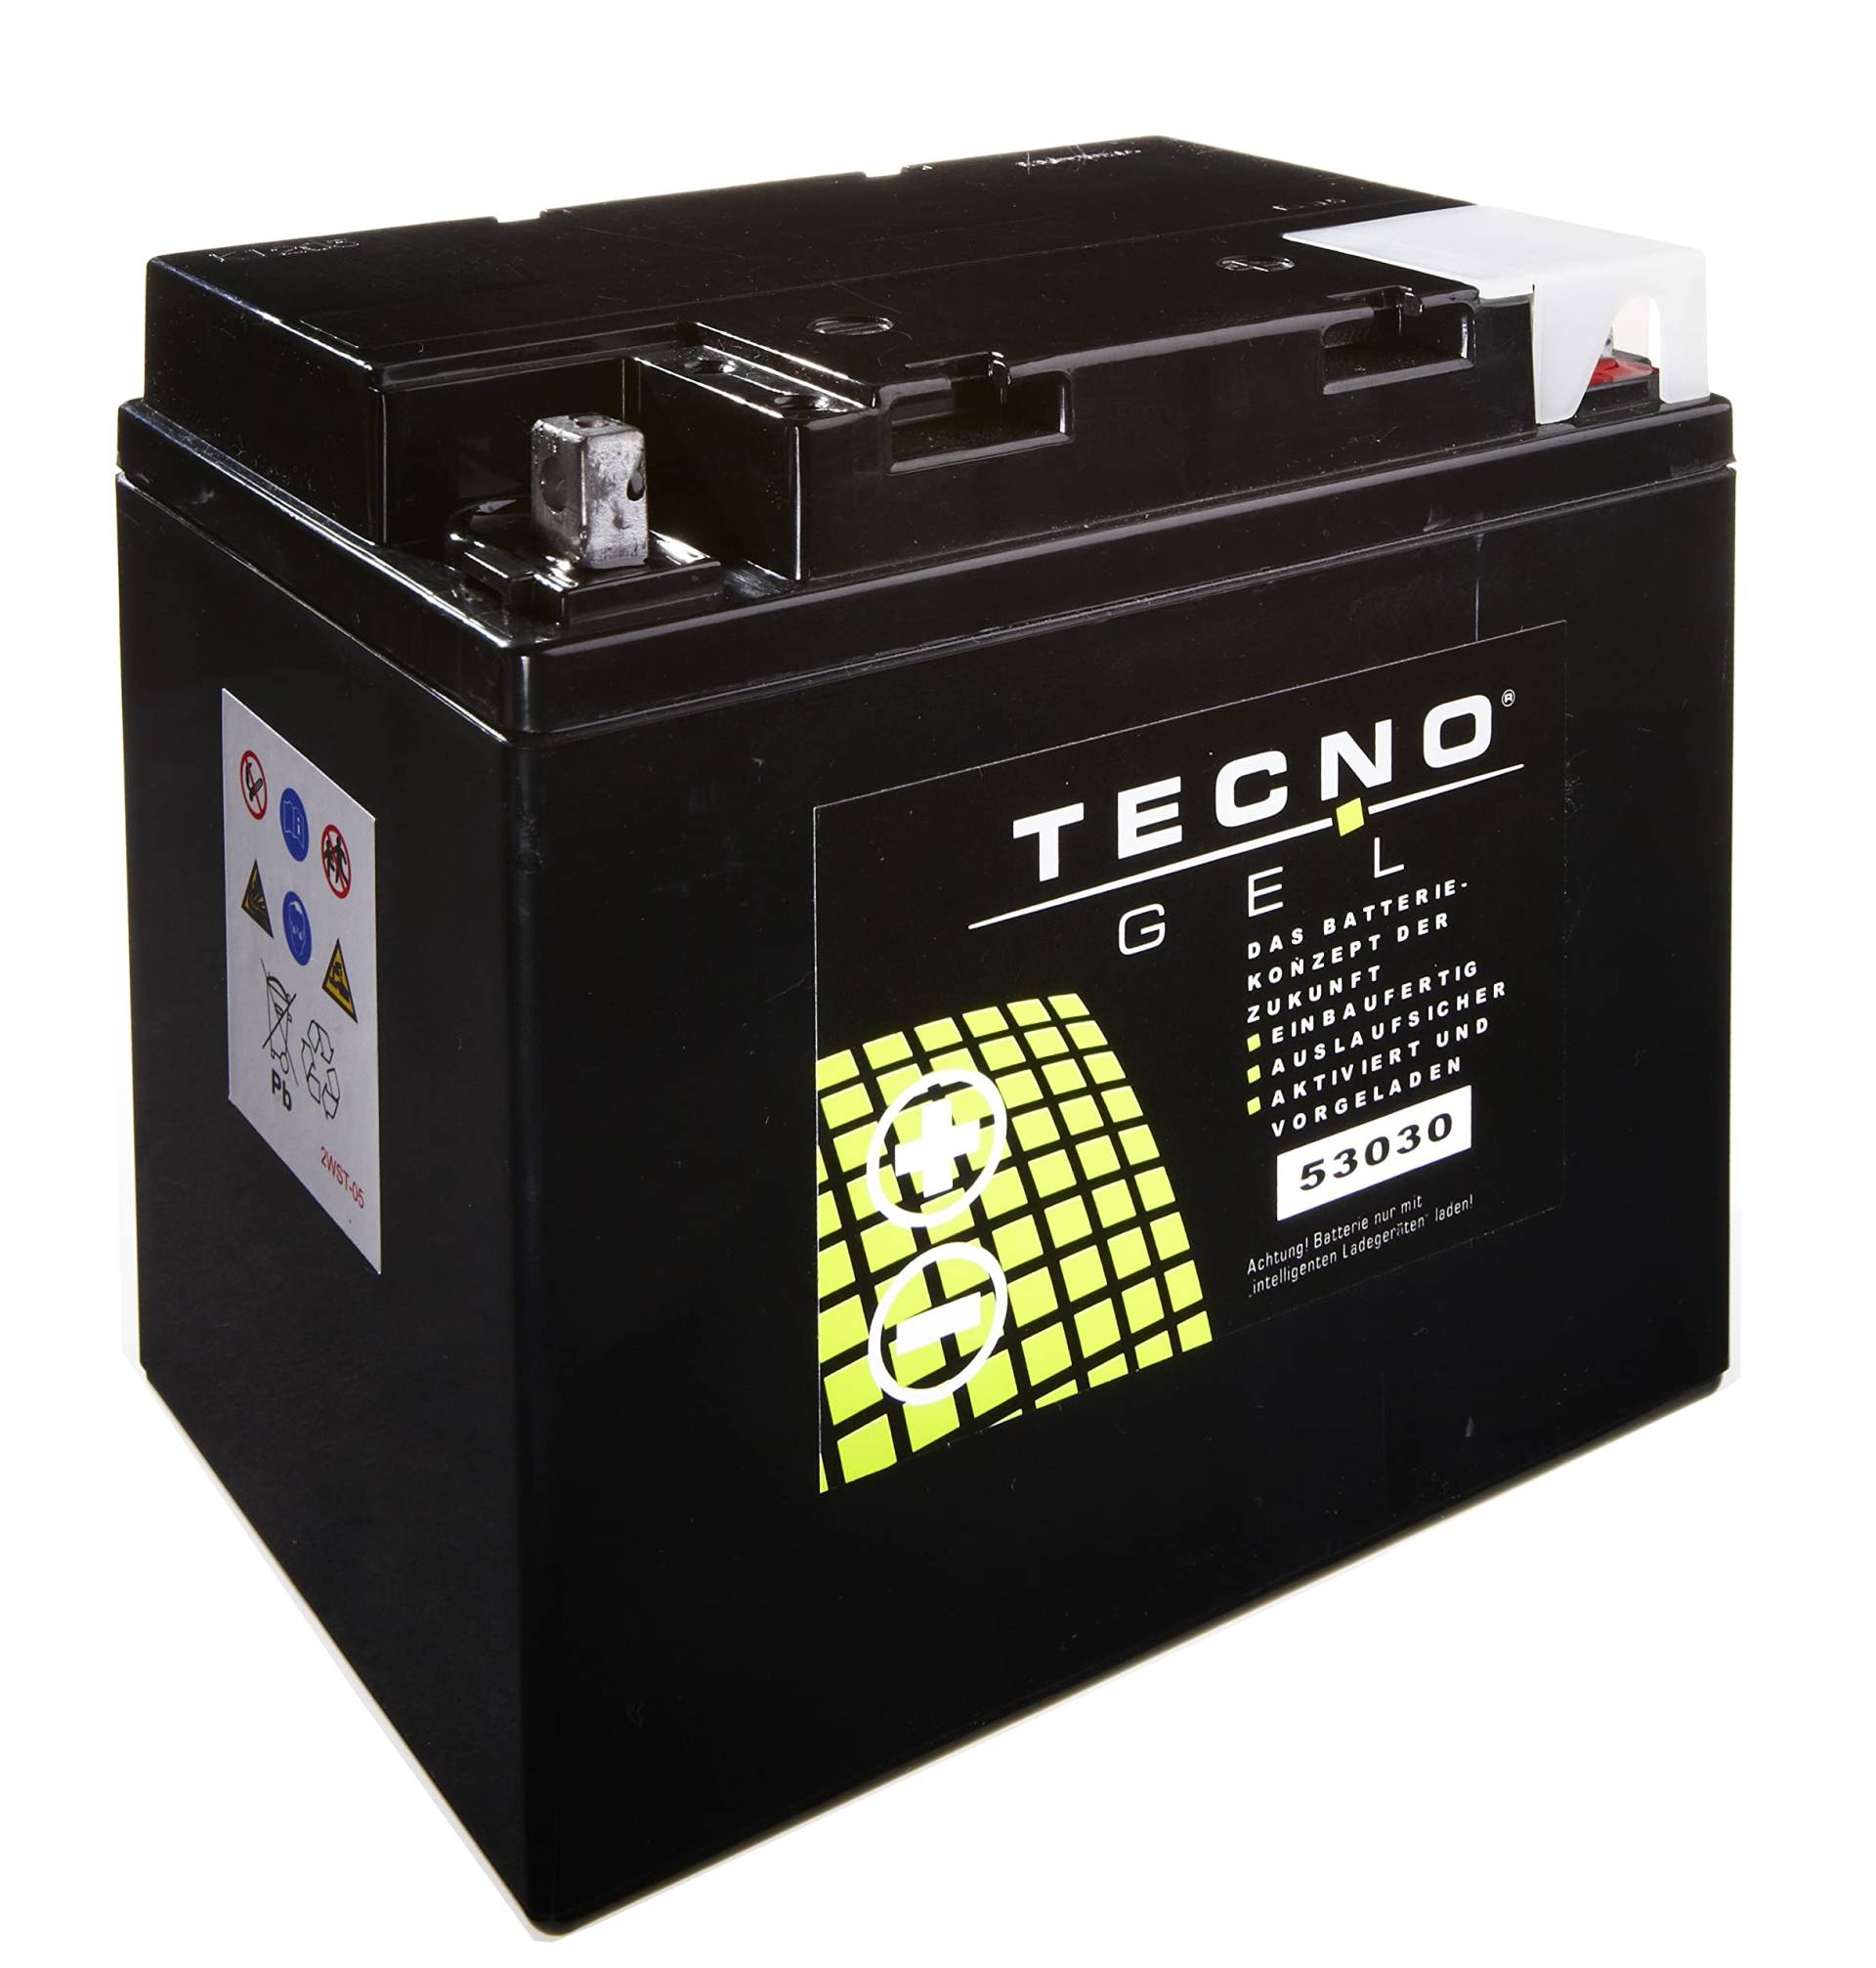 TECNO-GEL Motorrad Qualitäts Batterie 53030 für MOTO GUZZI Nevada 750, Club 1989-2004, 12V Gel-Batterie 30Ah, 187x130x170 mm von Wirth-Federn